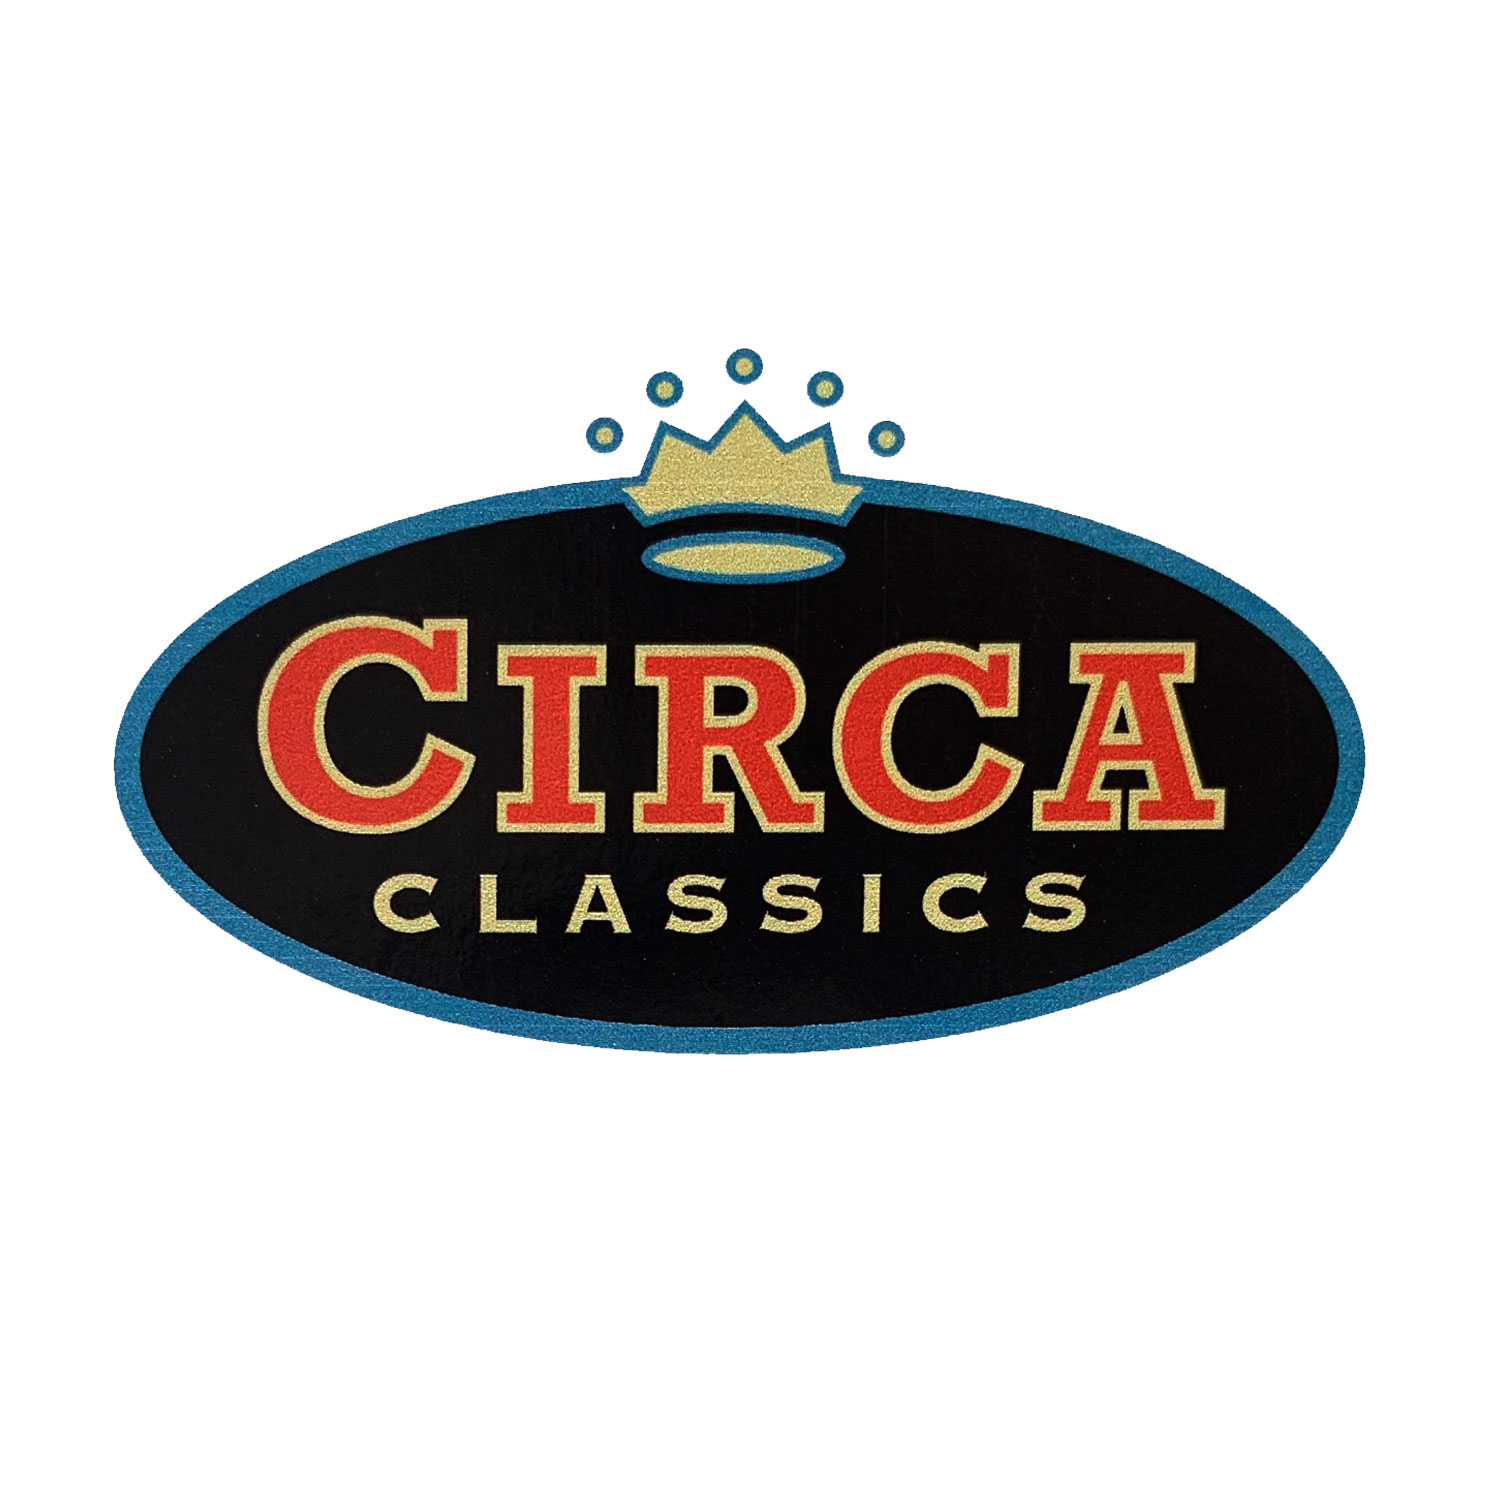 FP_Circa_Classics_Crown